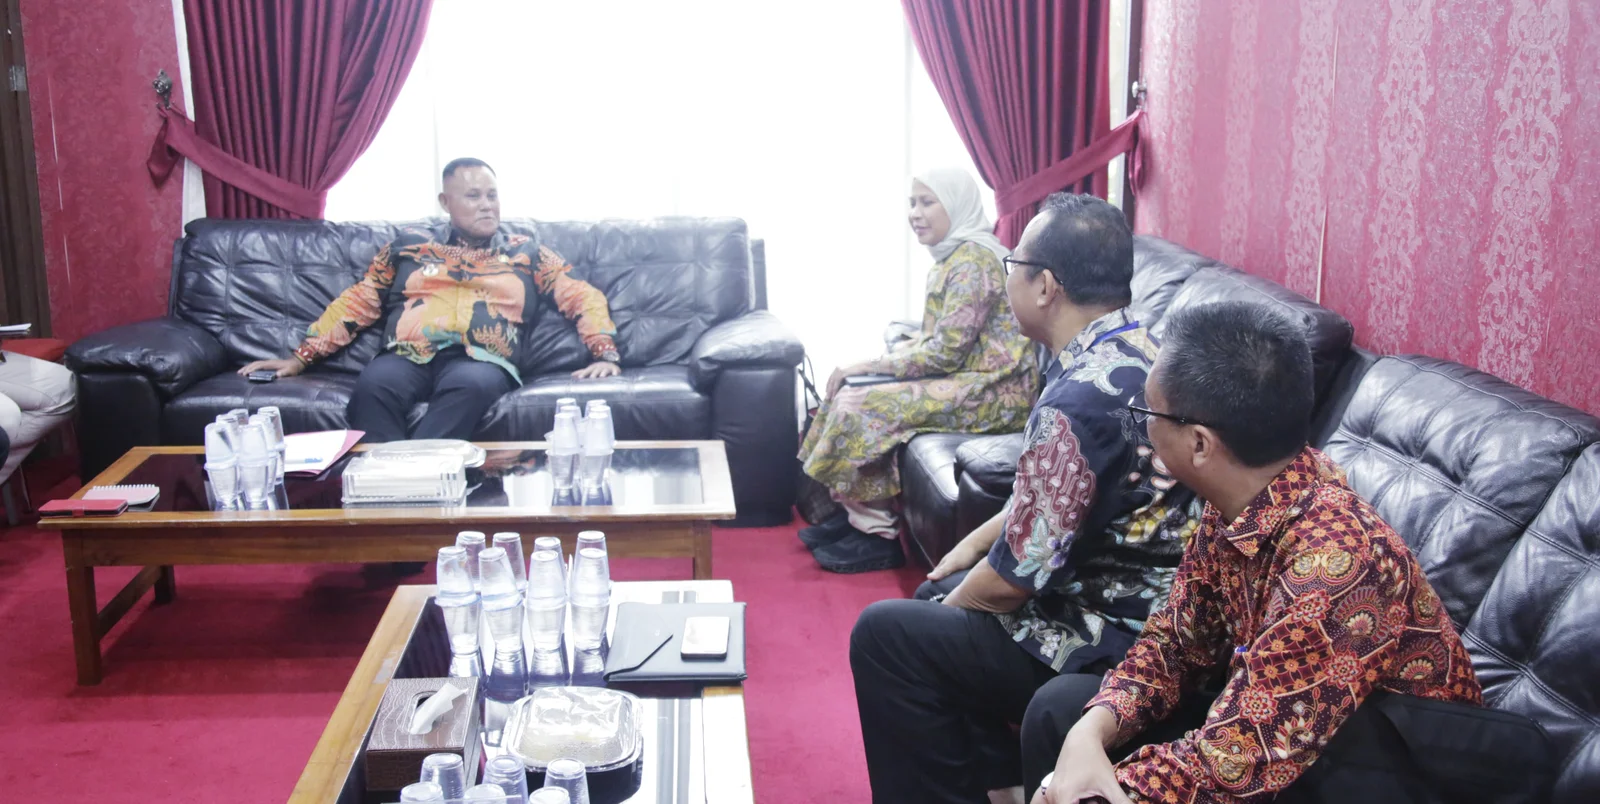 BPKP Perwakilan Provinsi Lampung Audiensi dengan Bupati Lampung Selatan